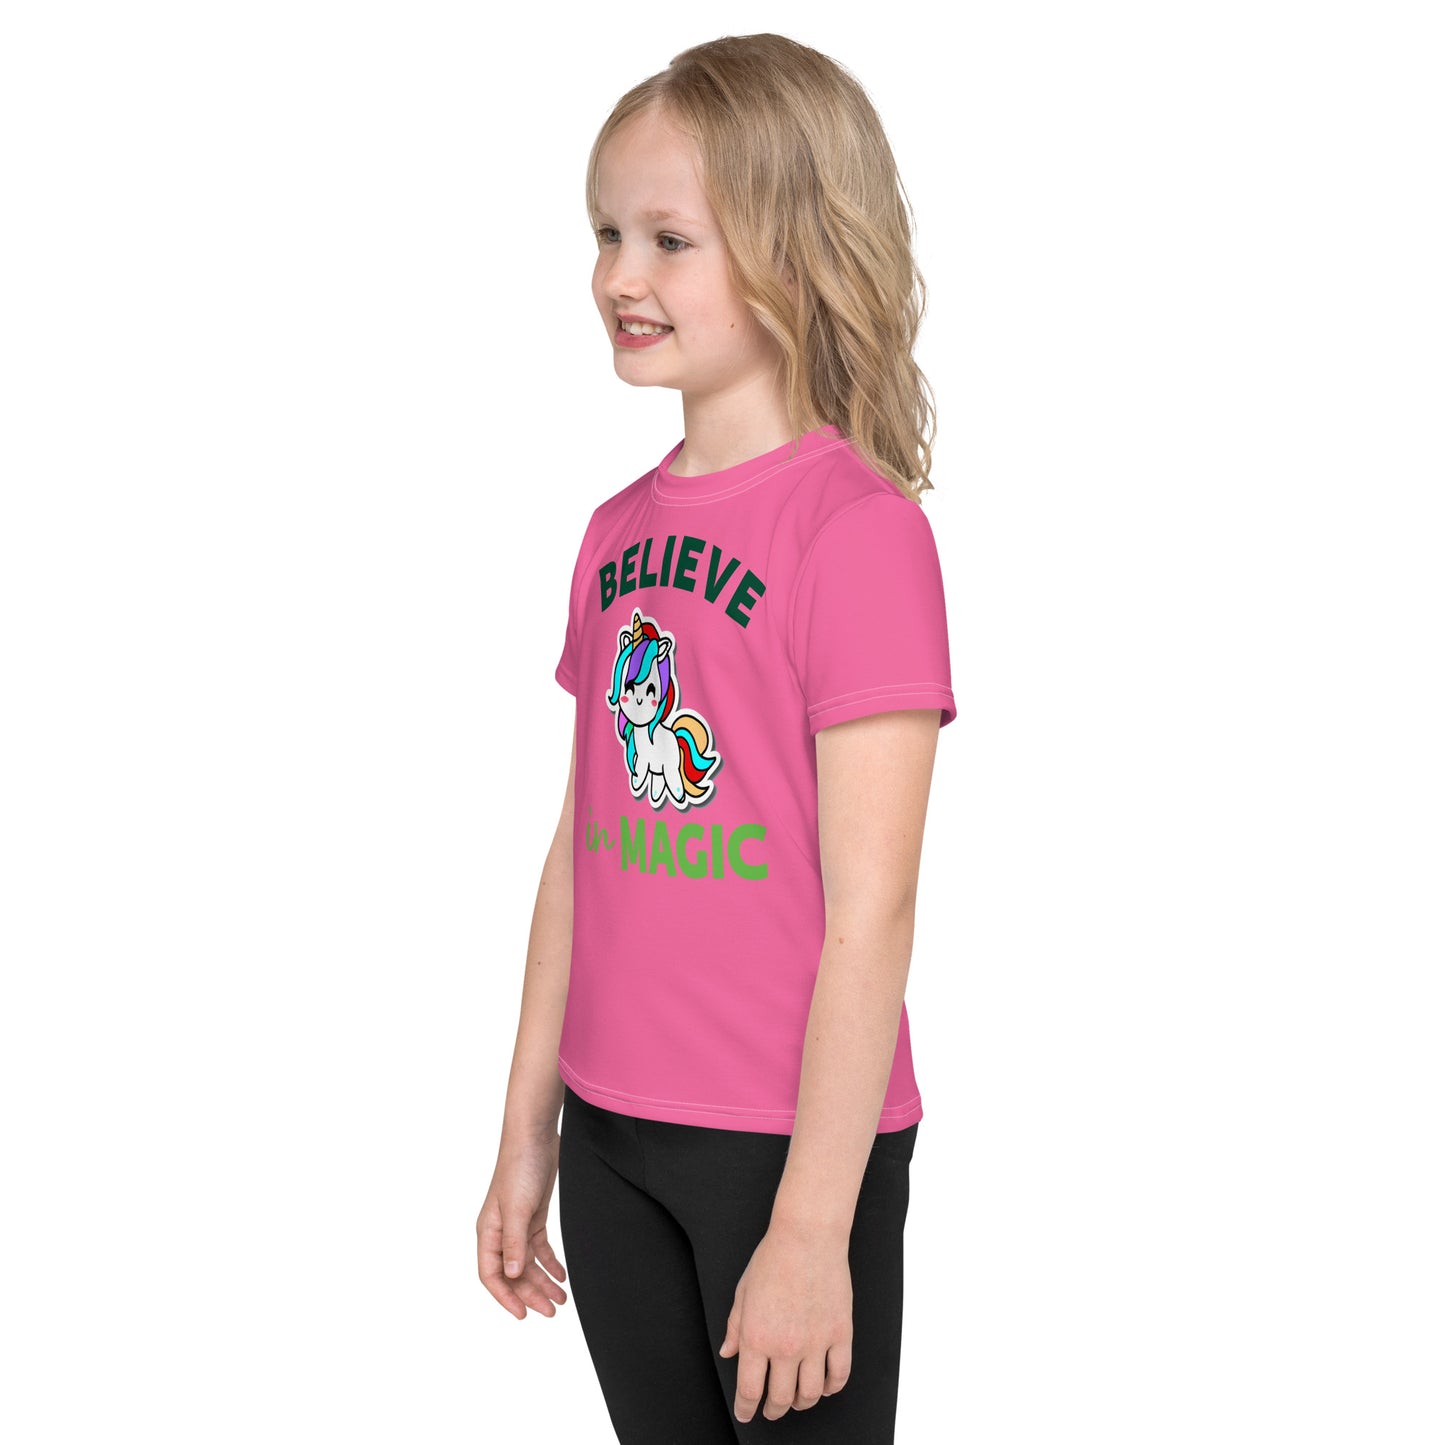 Kids T-shirt Polyester Jersey - Unicorn #1